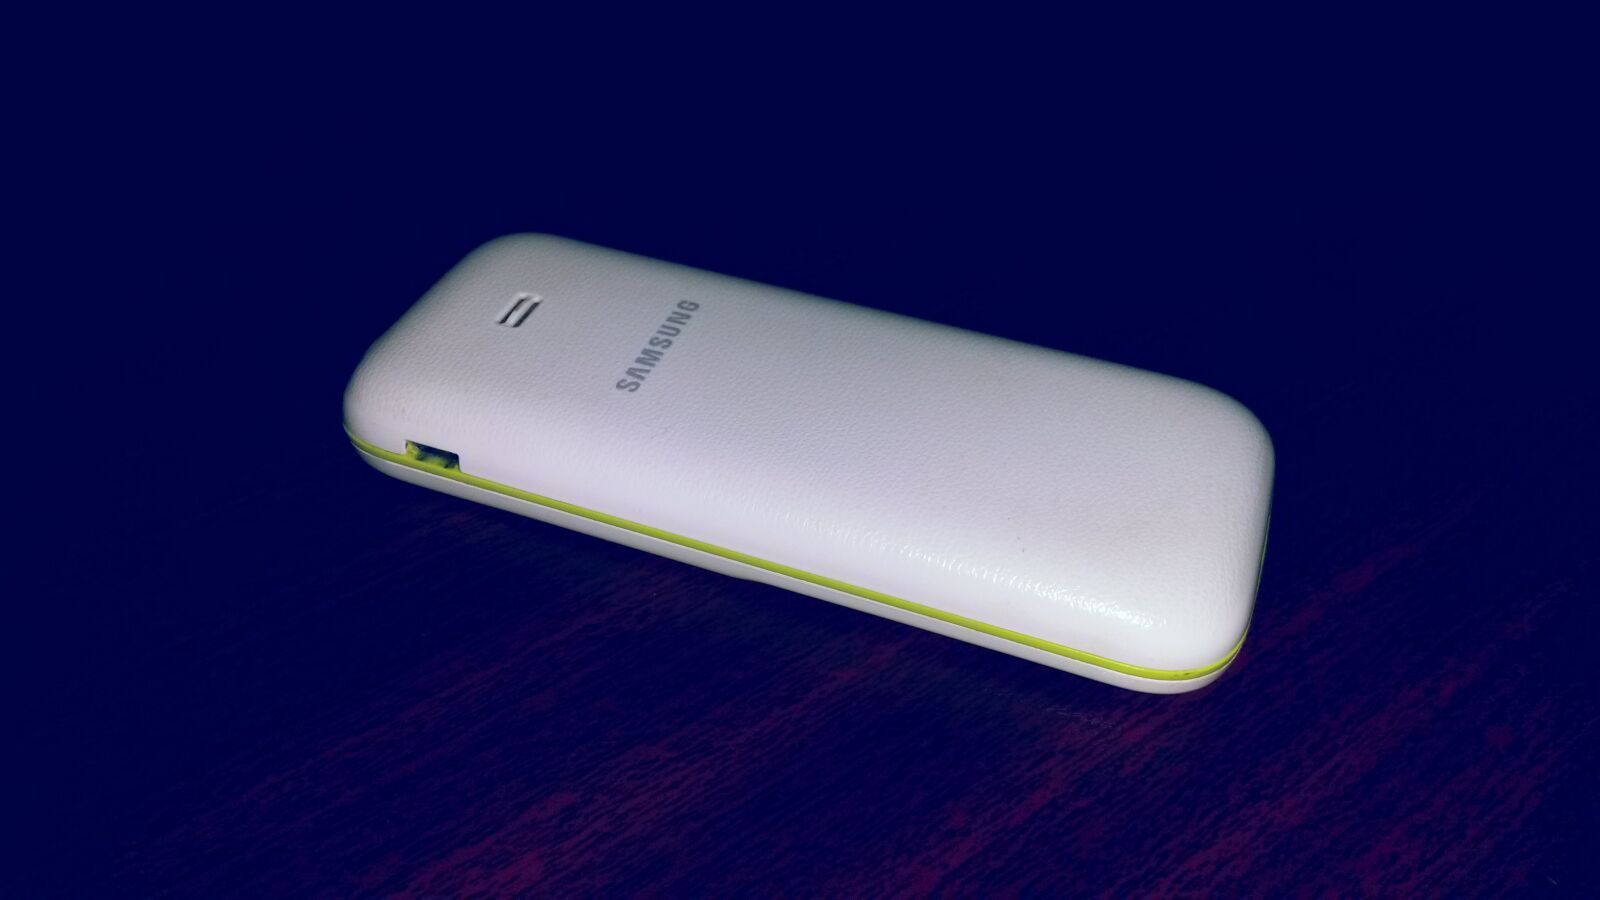 Samsung Galaxy S4 Mini sample photo. Samsung, guru photography